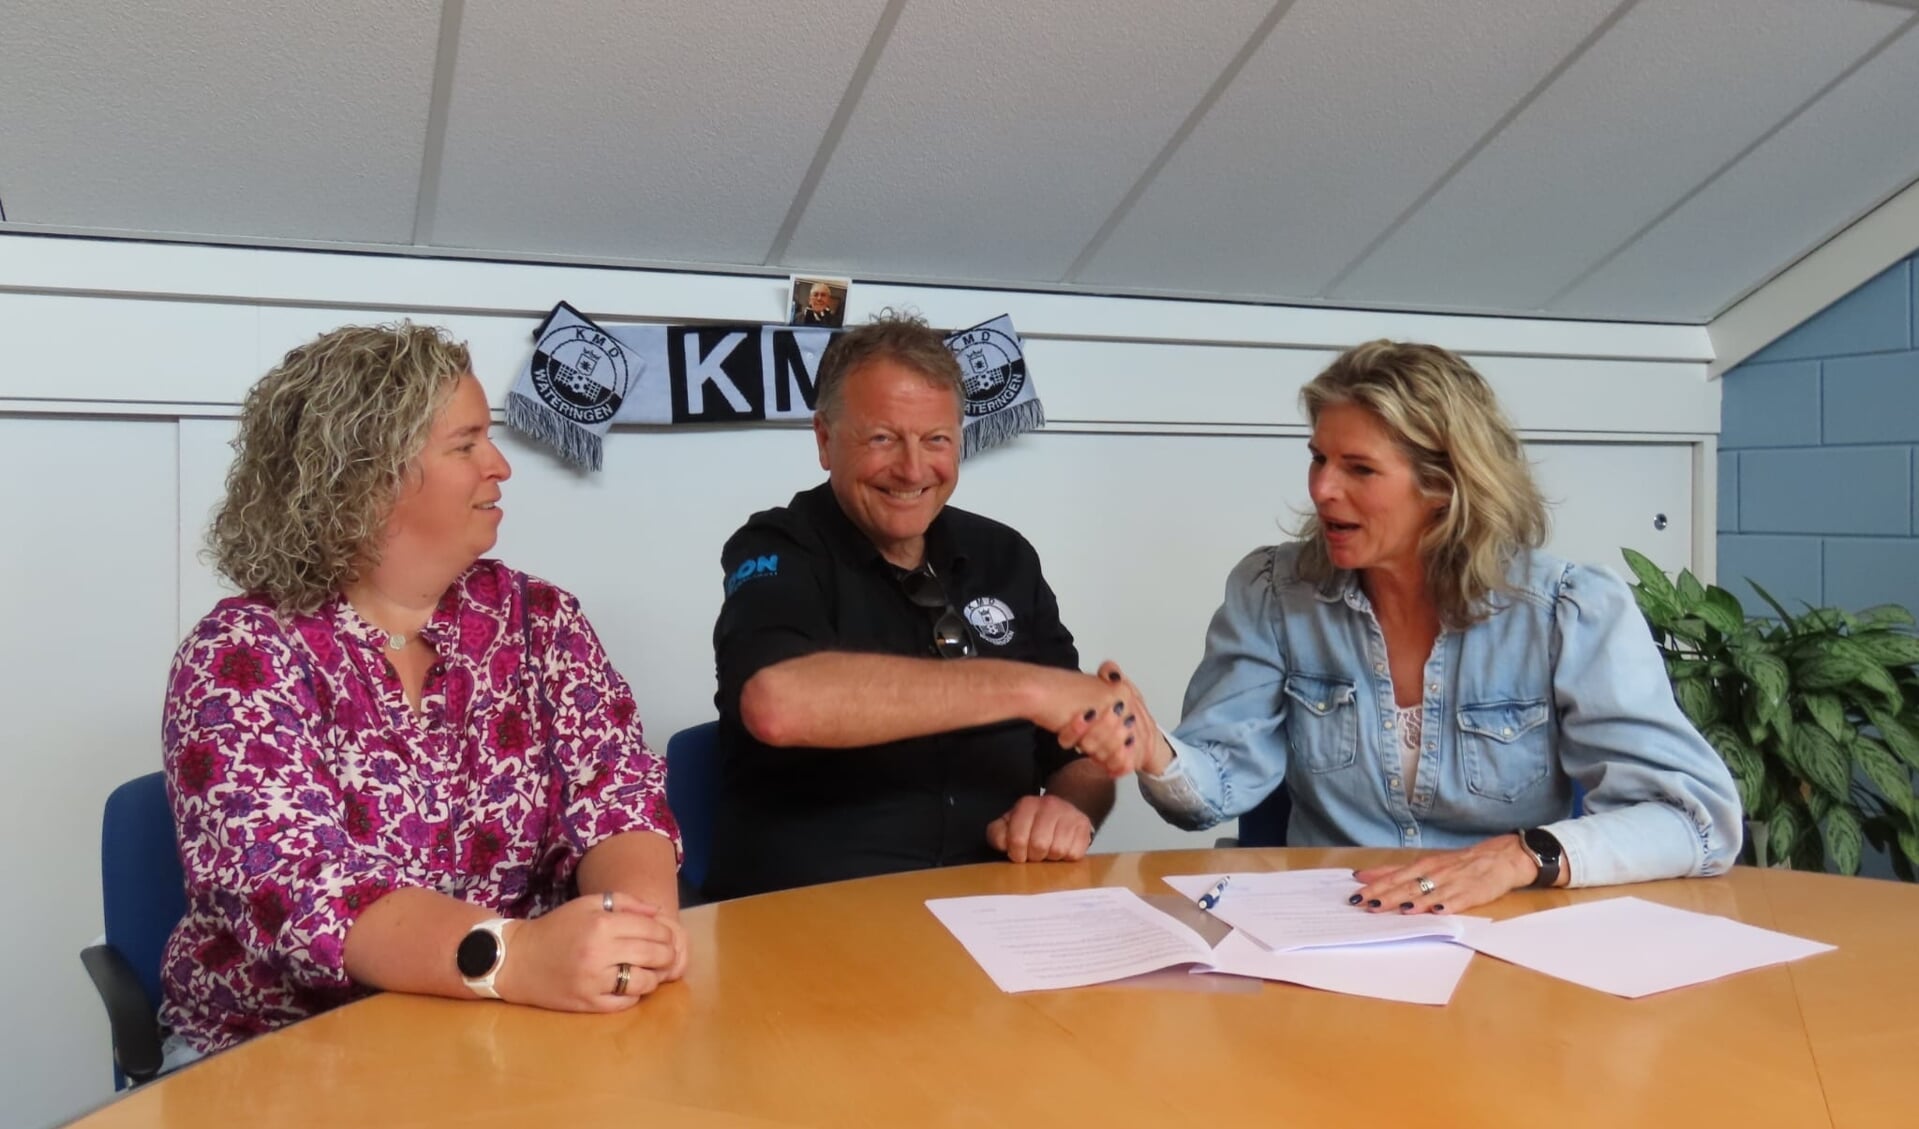 V.l.n.r. locatieverantwoordelijke Ilse de Rooij, KMD-voorzitter Peter van den Berg en clustermanager Elles Drop van Kwest tekenen met veel plezier de samenwerkingsovereenkomst.